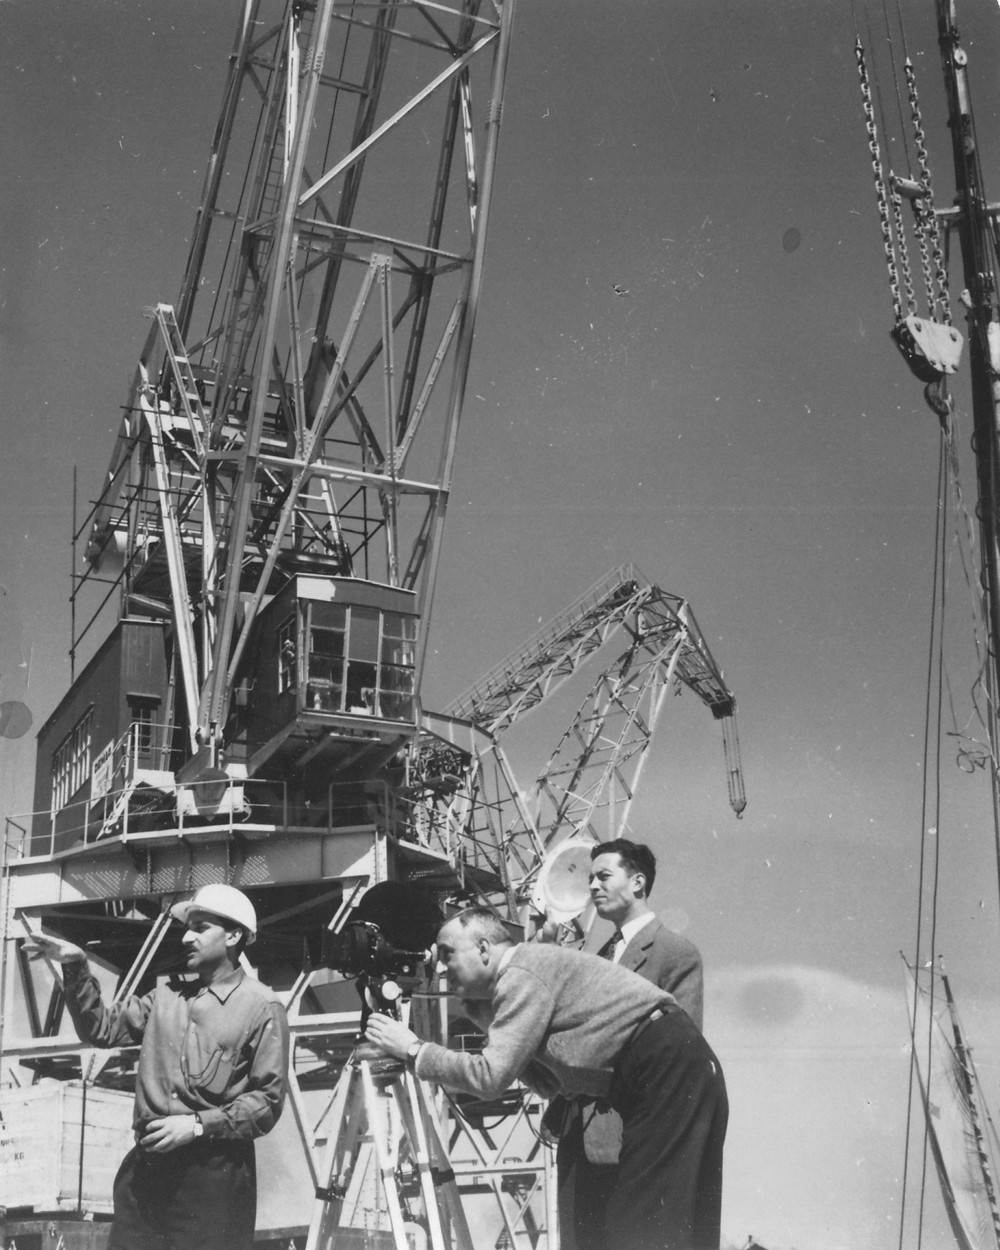   Ernesto de Sousa and Aquilino Mendes, filming of "Rodando pelos Caminhos" for Shell, c. 1958. 